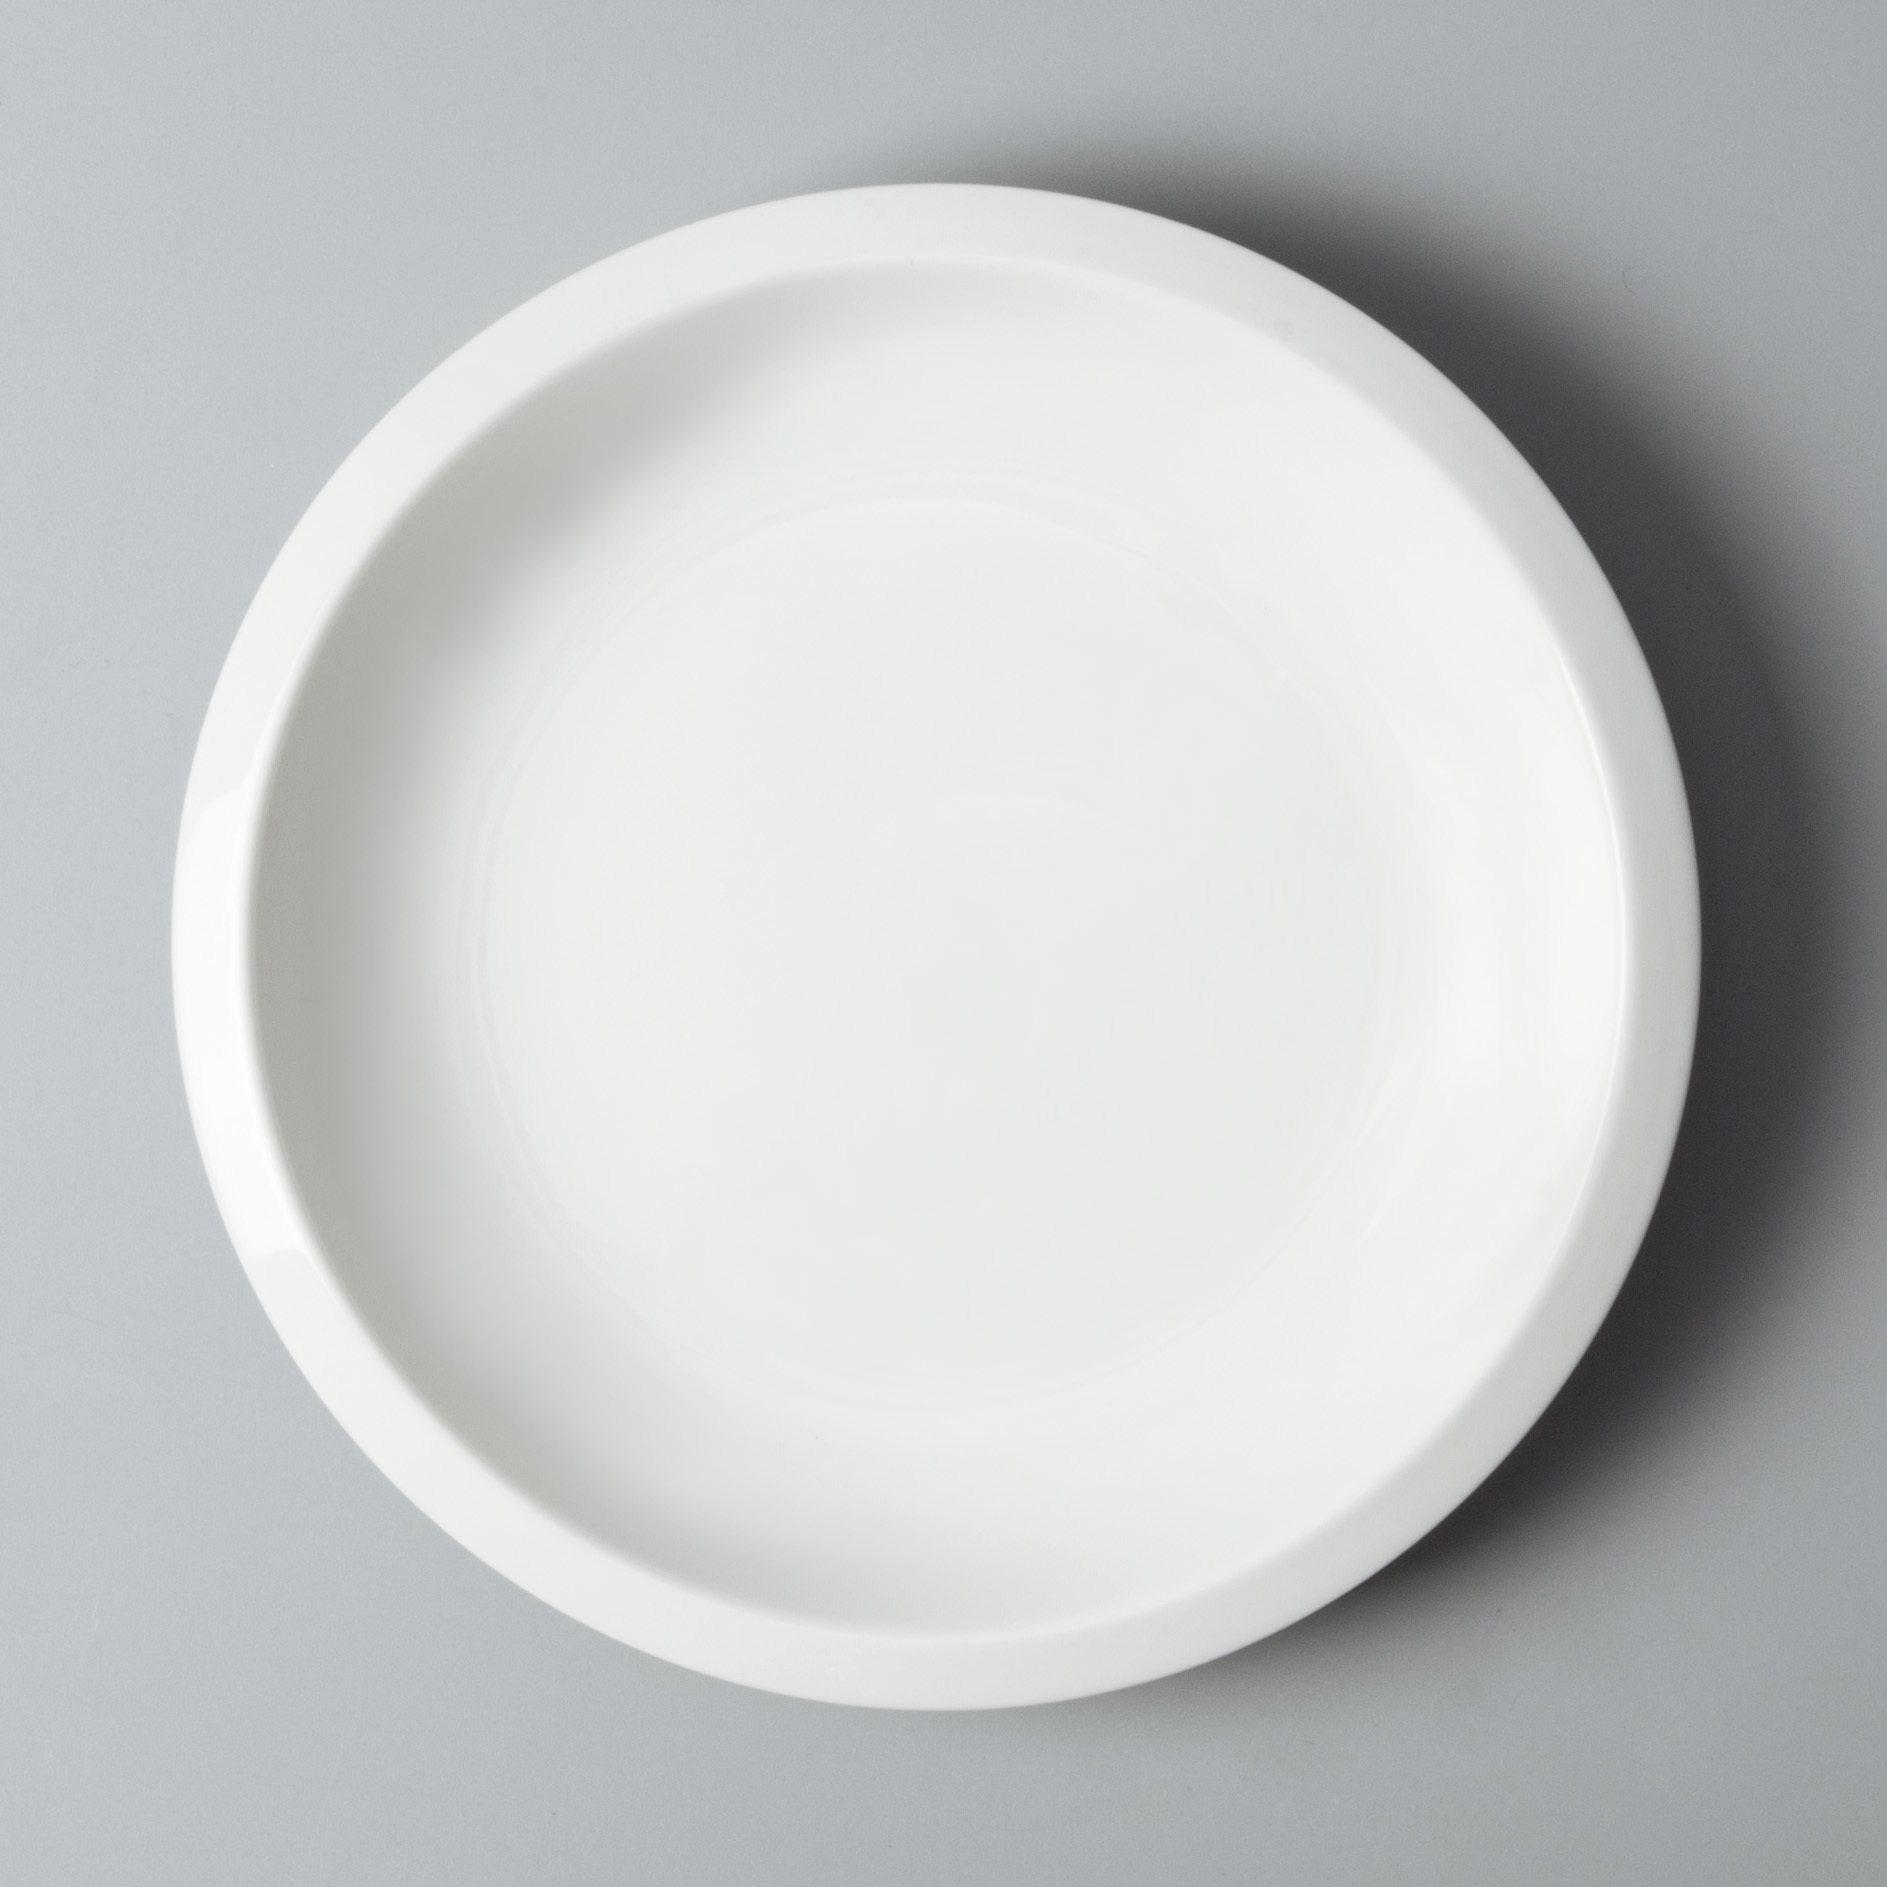 restaurant dinnerware sets sample for restaurant Two Eight